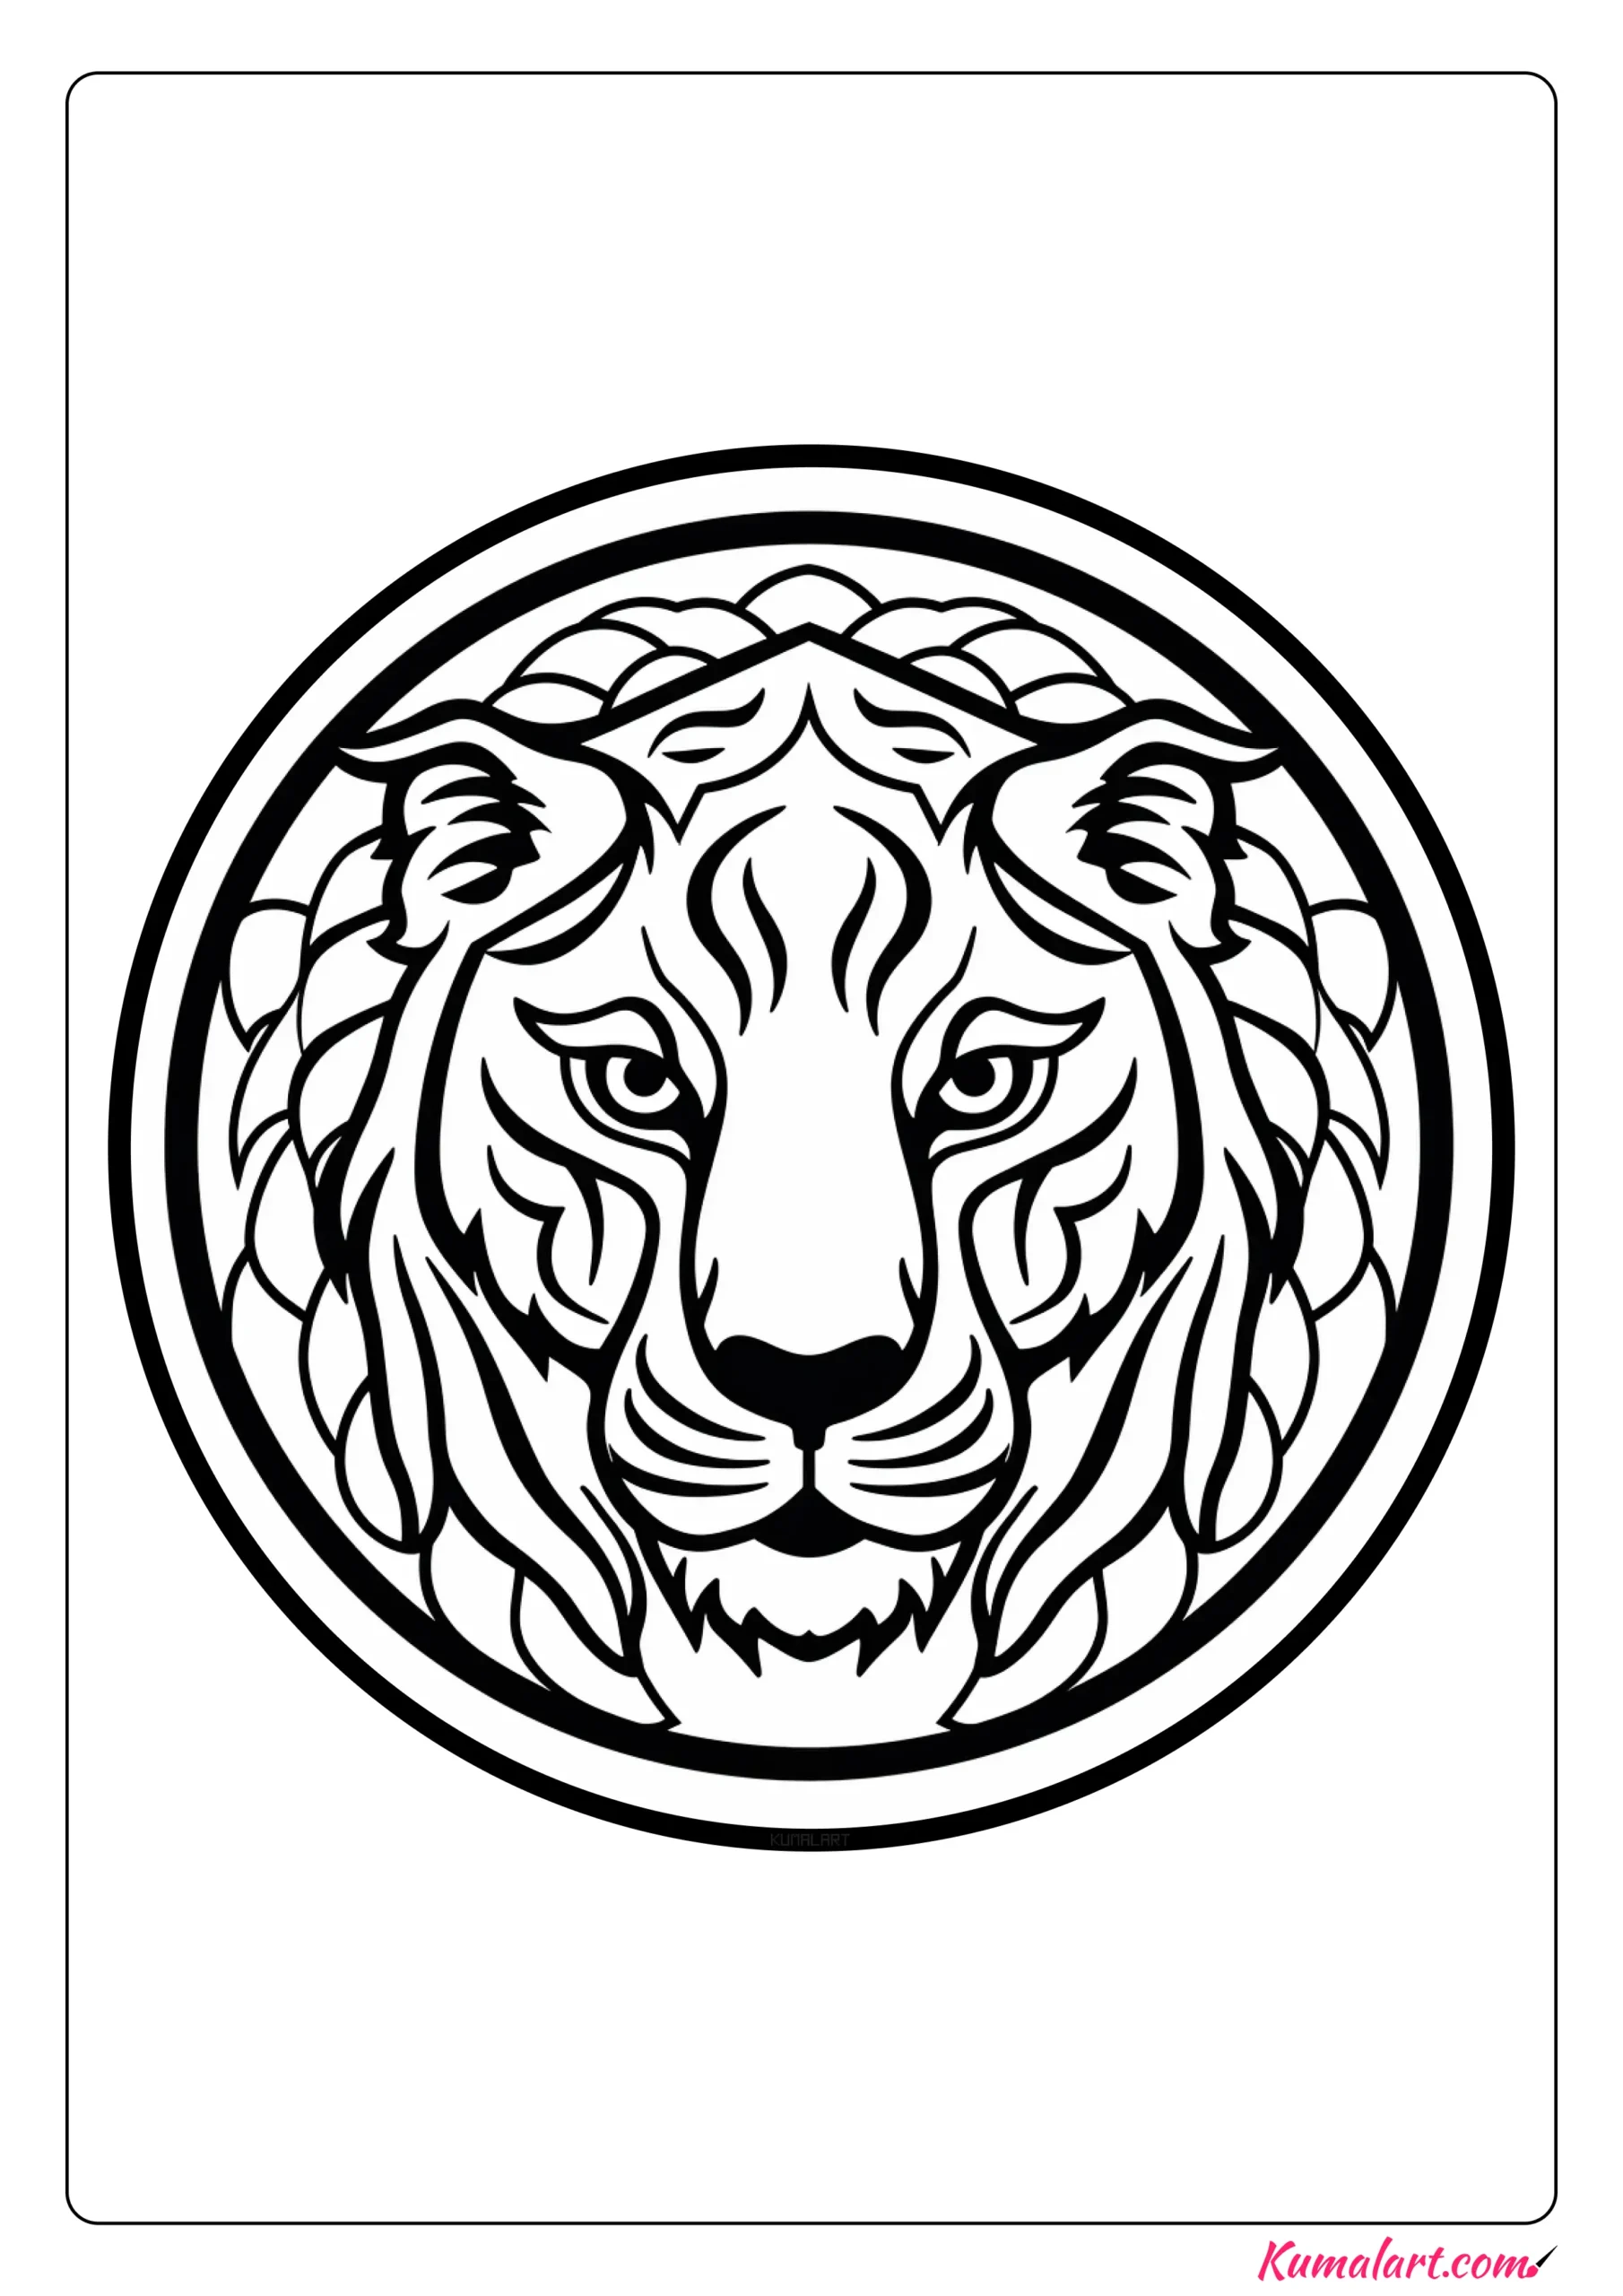 Kaziu the Tiger Mandala Coloring Page